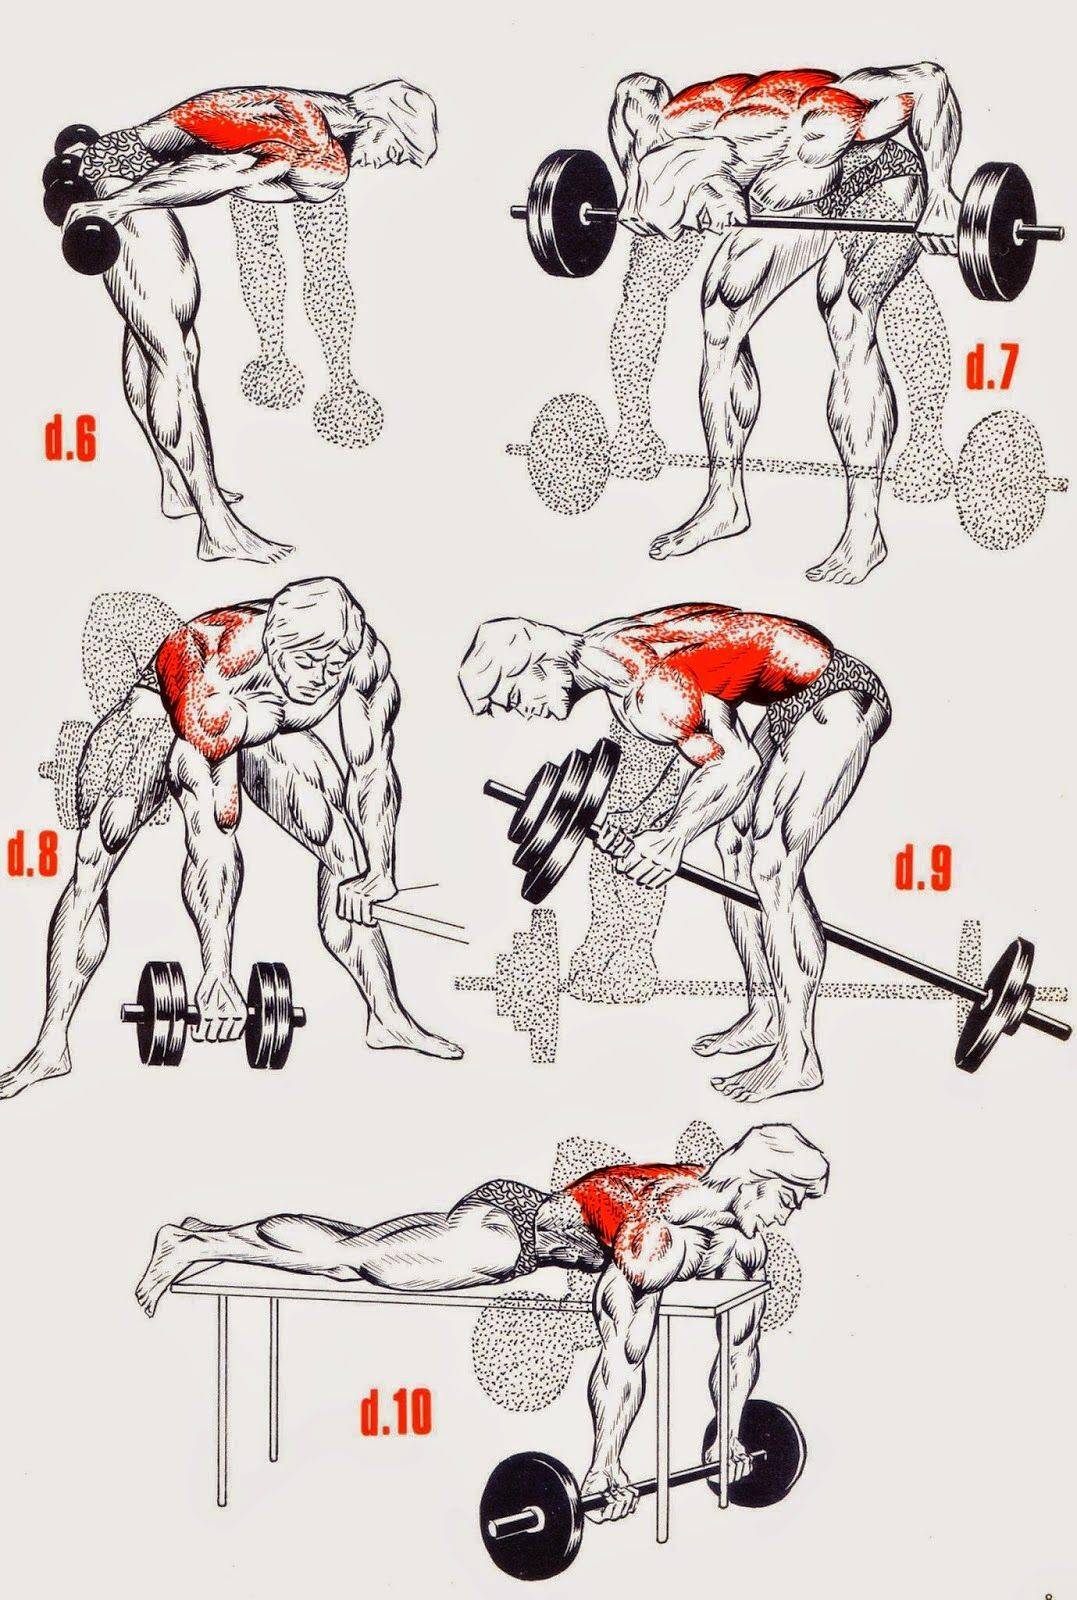 Как накачать «крылья»: самые эффективные упражнения для мышц спины